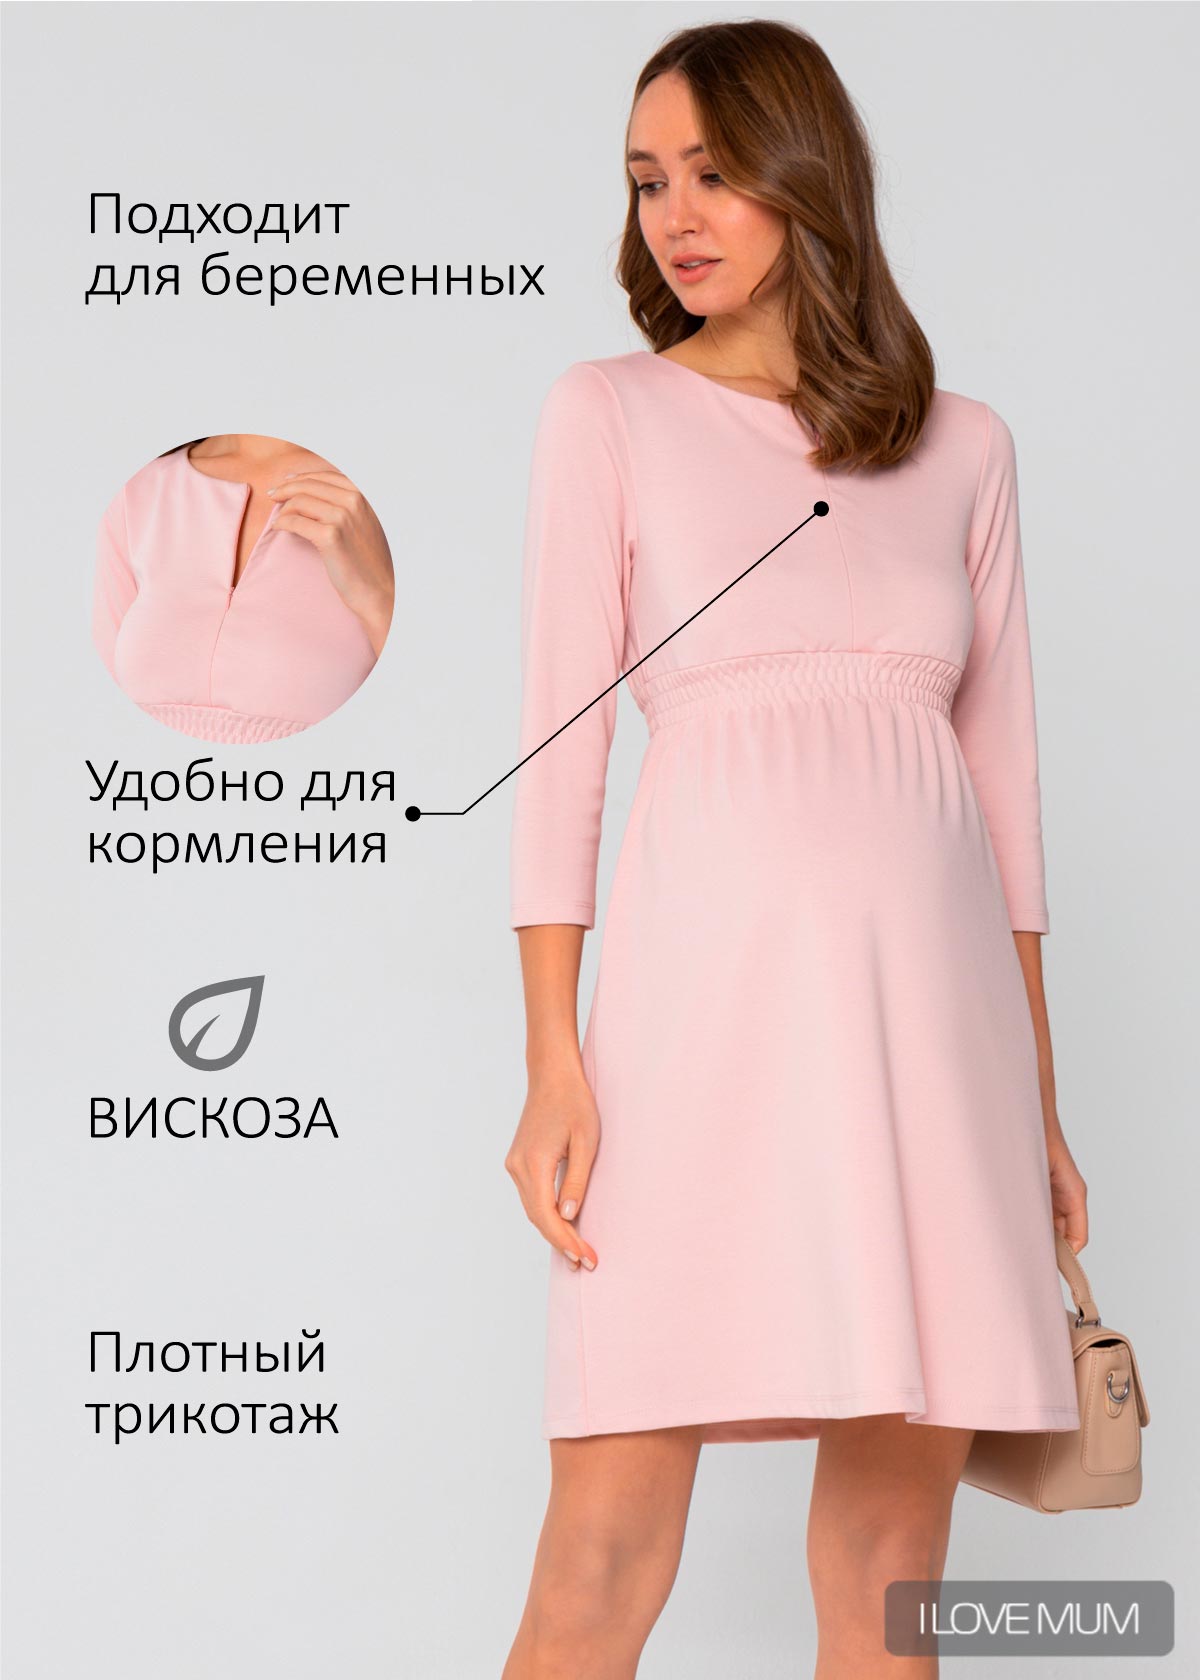 Платье Алиша для беременных и кормящих цвет пудровый (арт. 130170) купить в  Москве по цене 1 999 руб в интернет-магазине I Love Mum